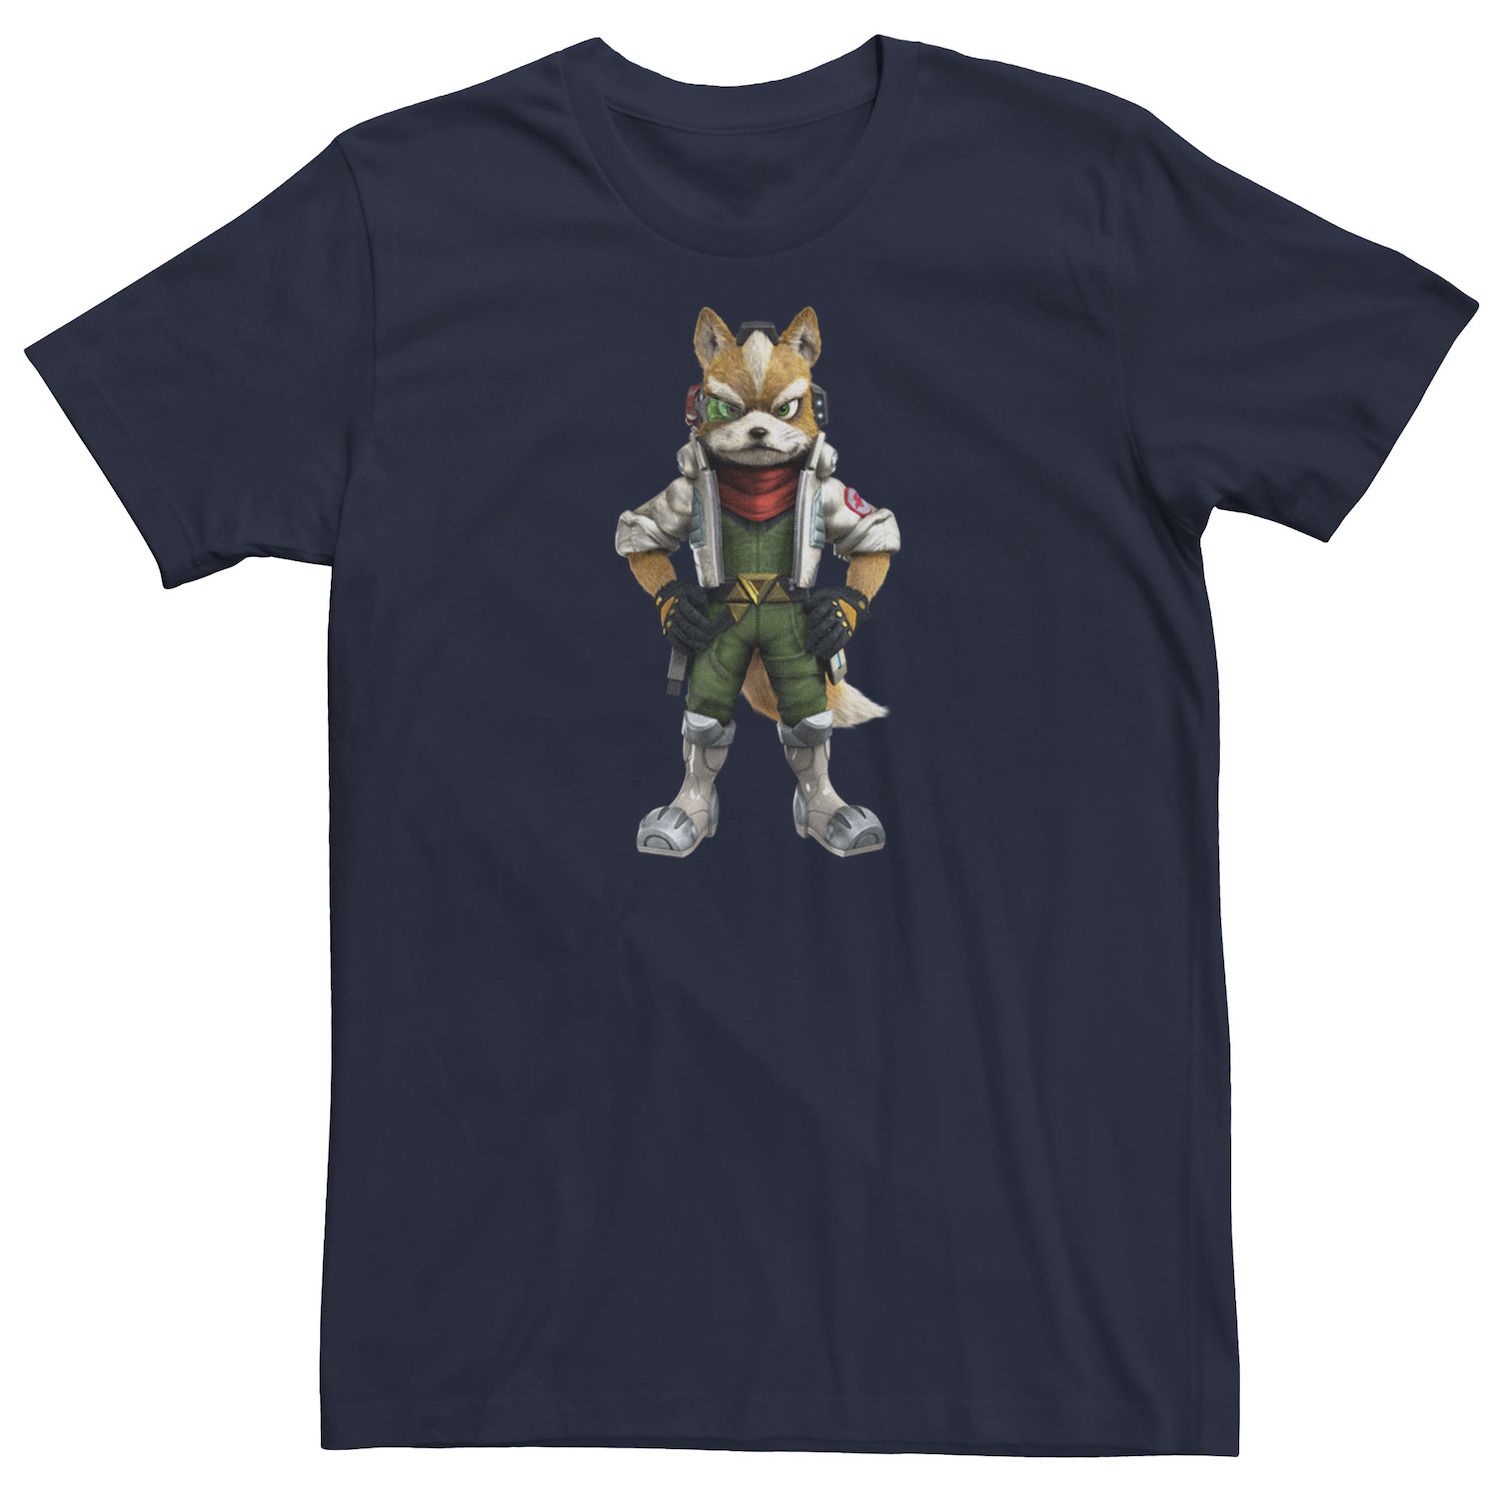 Мужская футболка с портретом Nintendo Star Fox Licensed Character фото